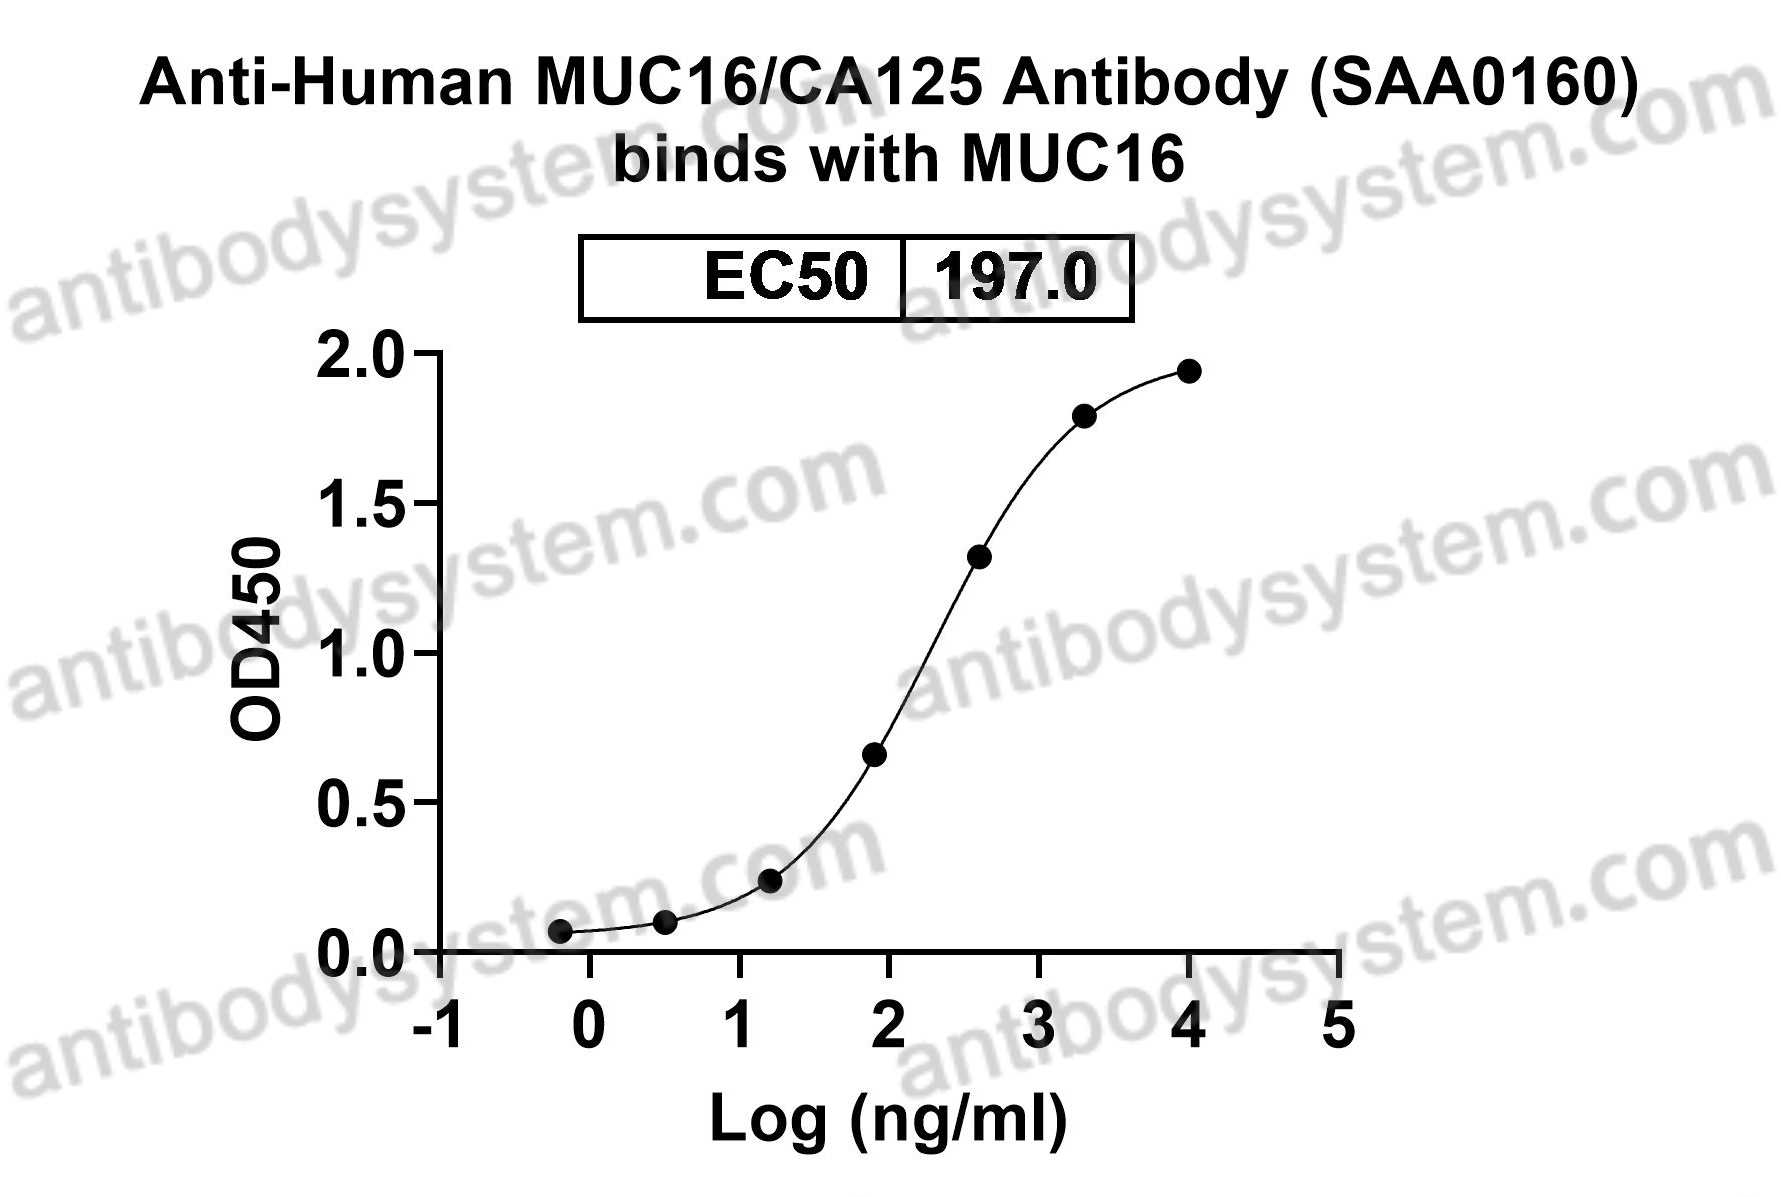 Anti-Human MUC16/CA125 Antibody (SAA0160)